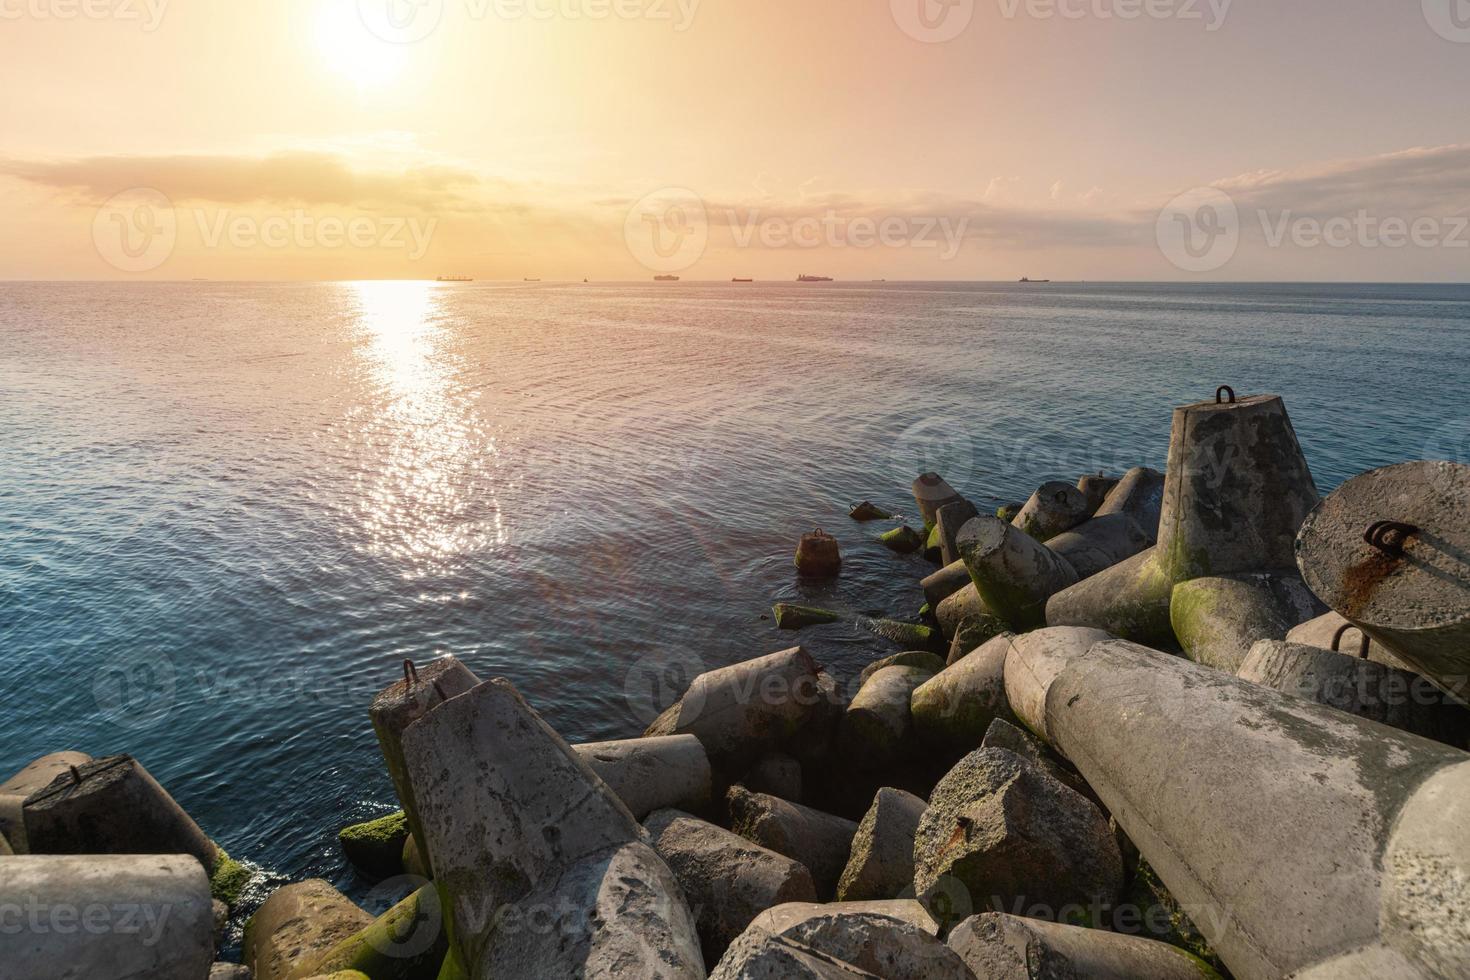 bellissimo paesaggio marino al tramonto. frangiflutti tetrapodi a riva del molo. navi da carico all'orizzonte. sogni di viaggio e motivazione foto